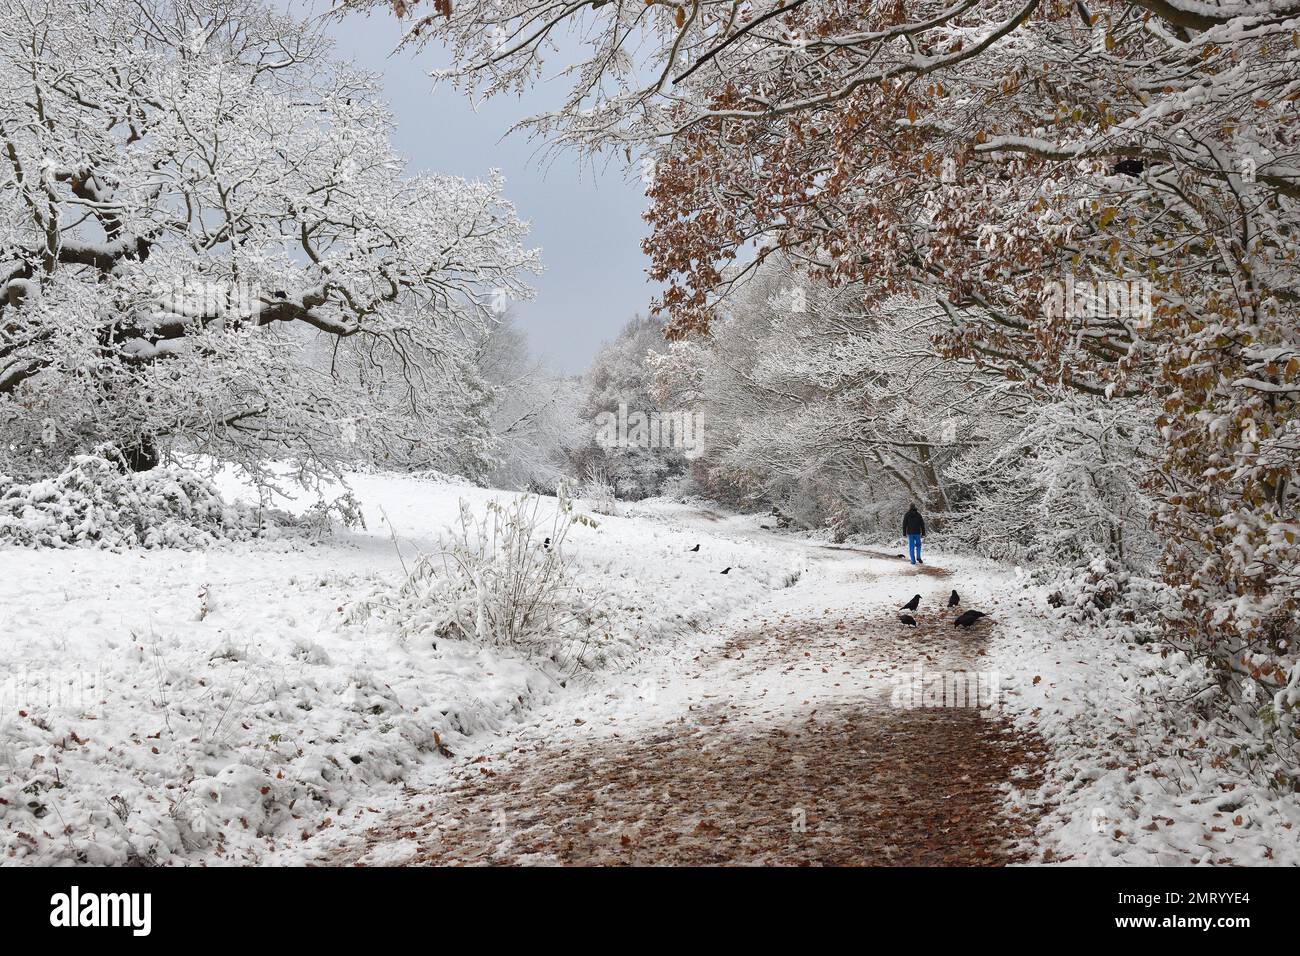 Un hiver merveilleux pendant une période de froid avec le gel et la neige recouvrant les brindilles et les feuilles des arbres à Hampstead Heath, Londres, Angleterre, Royaume-Uni. Banque D'Images